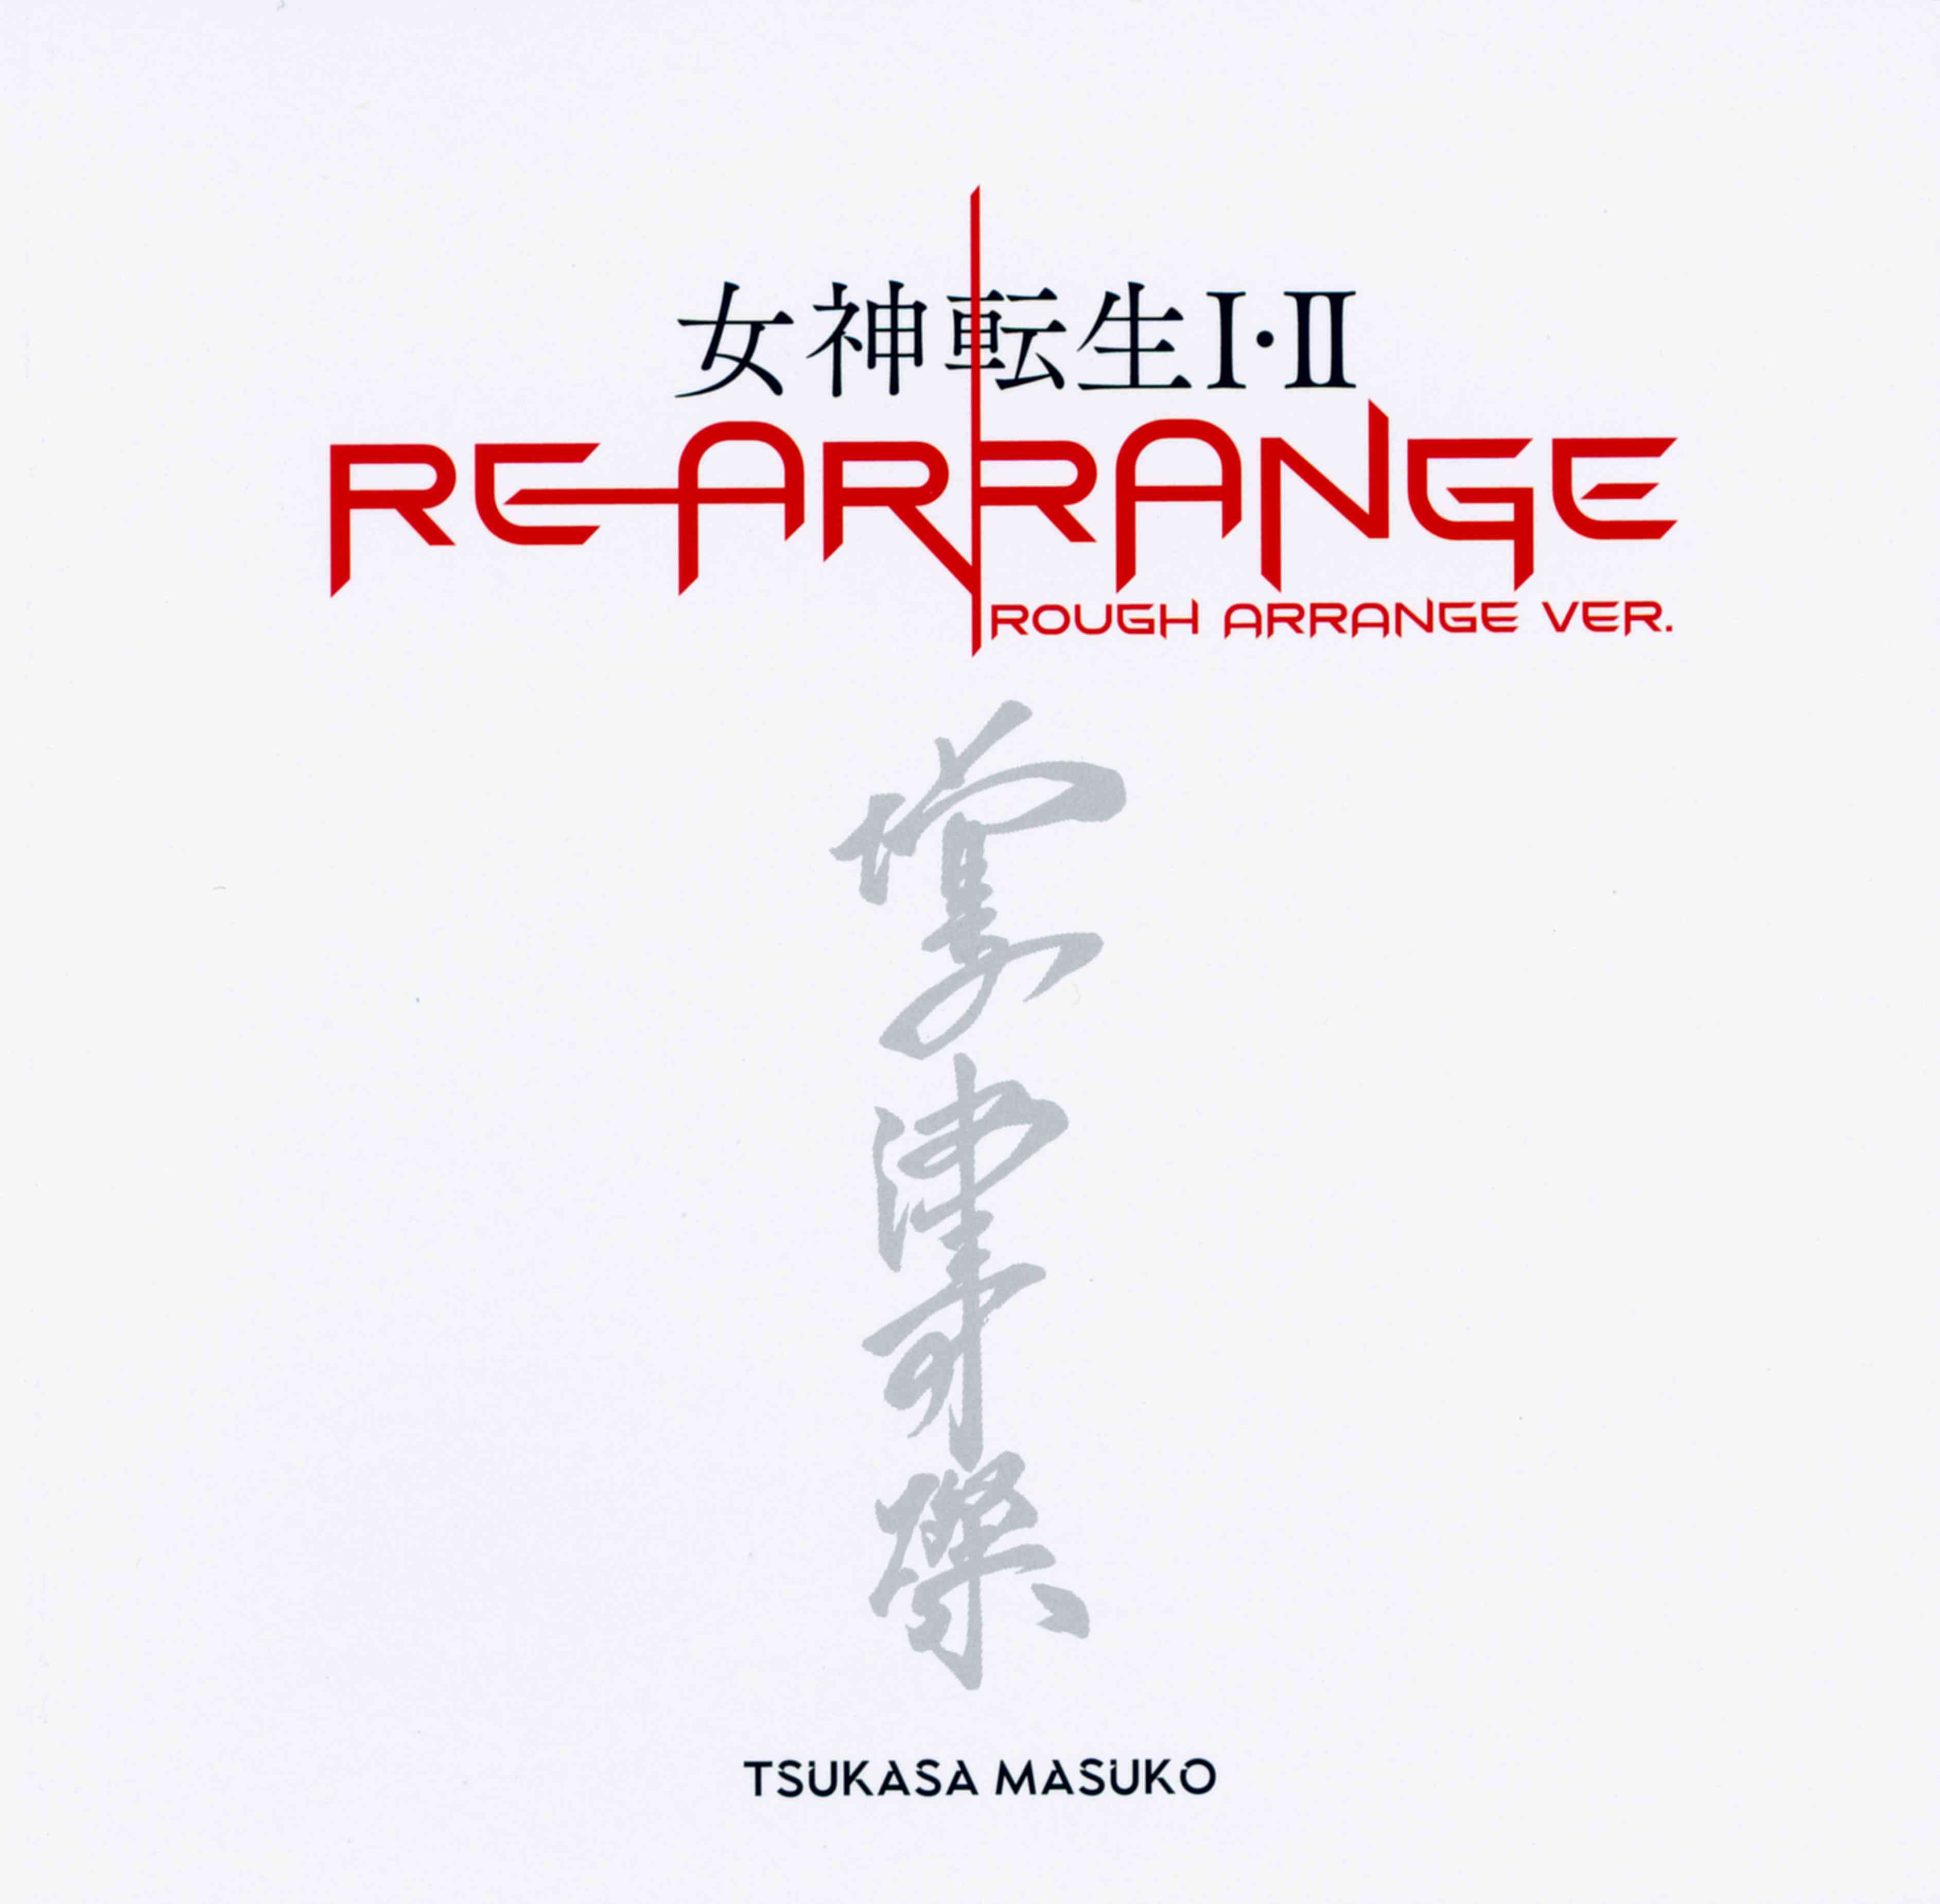 Megami Tensei I&II Rearrange Rough Arrange Ver. / Tsukasa Masuko